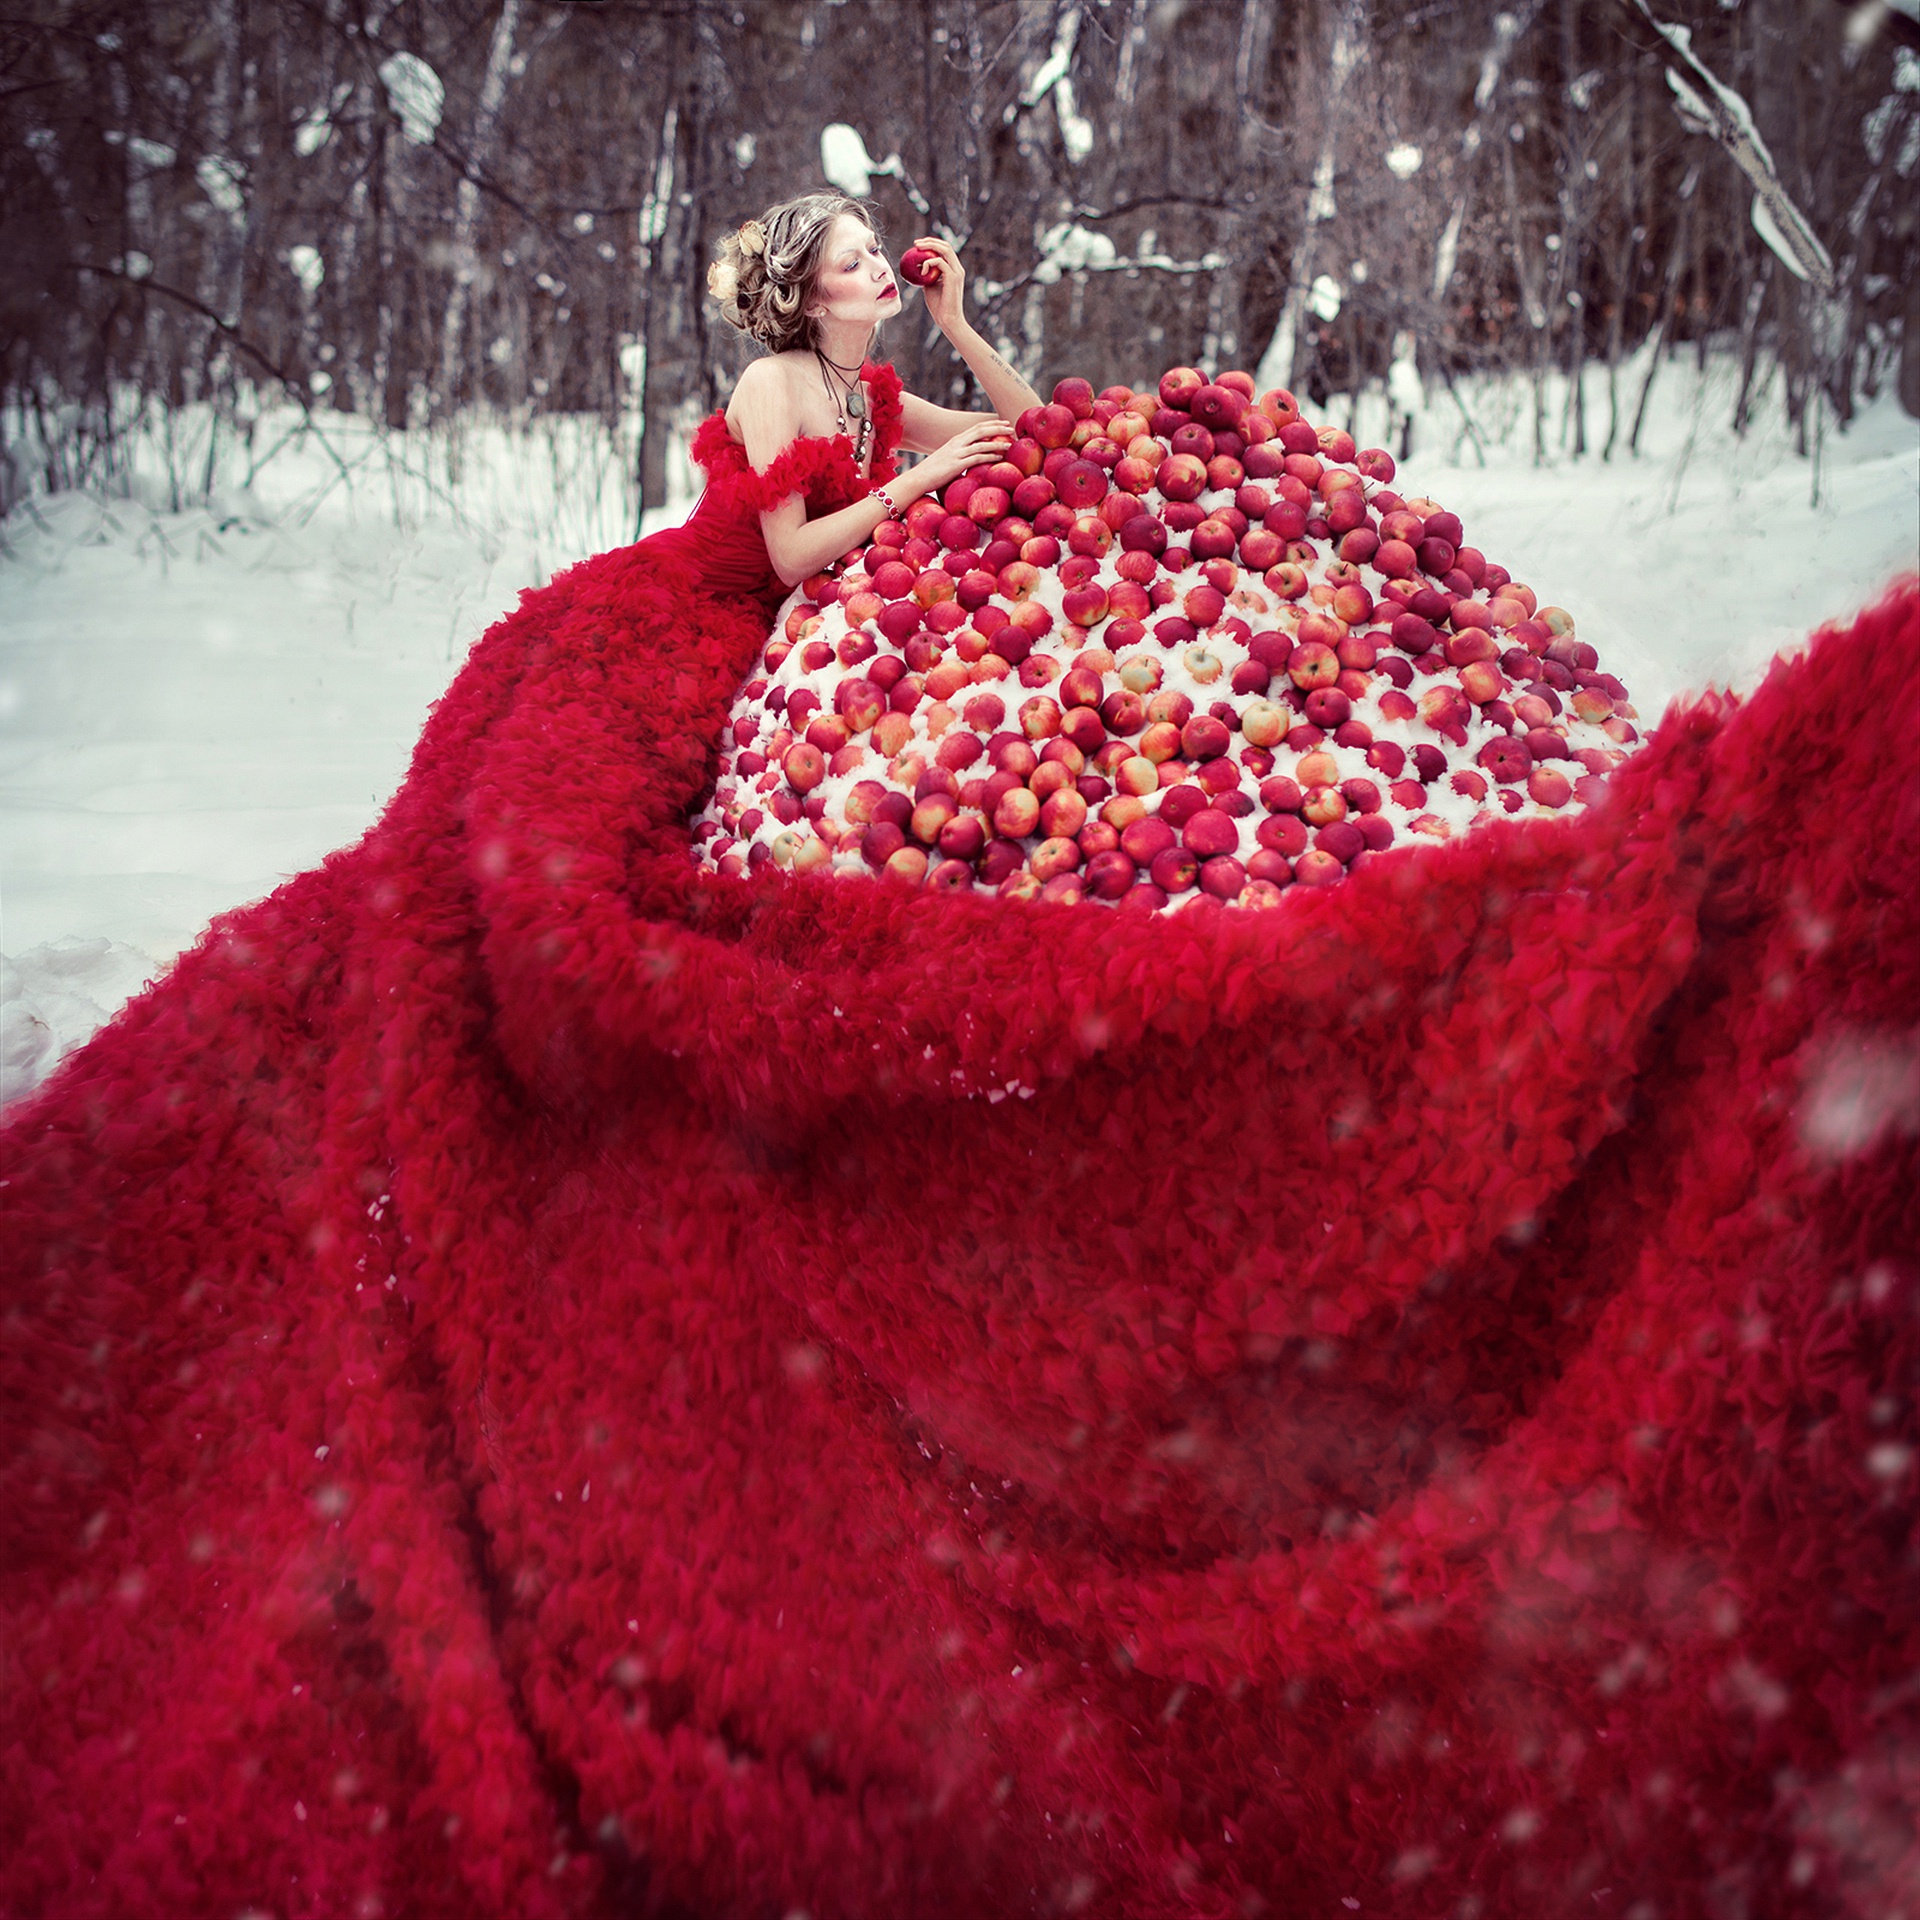 Фотосессия в Красном платье на снегу